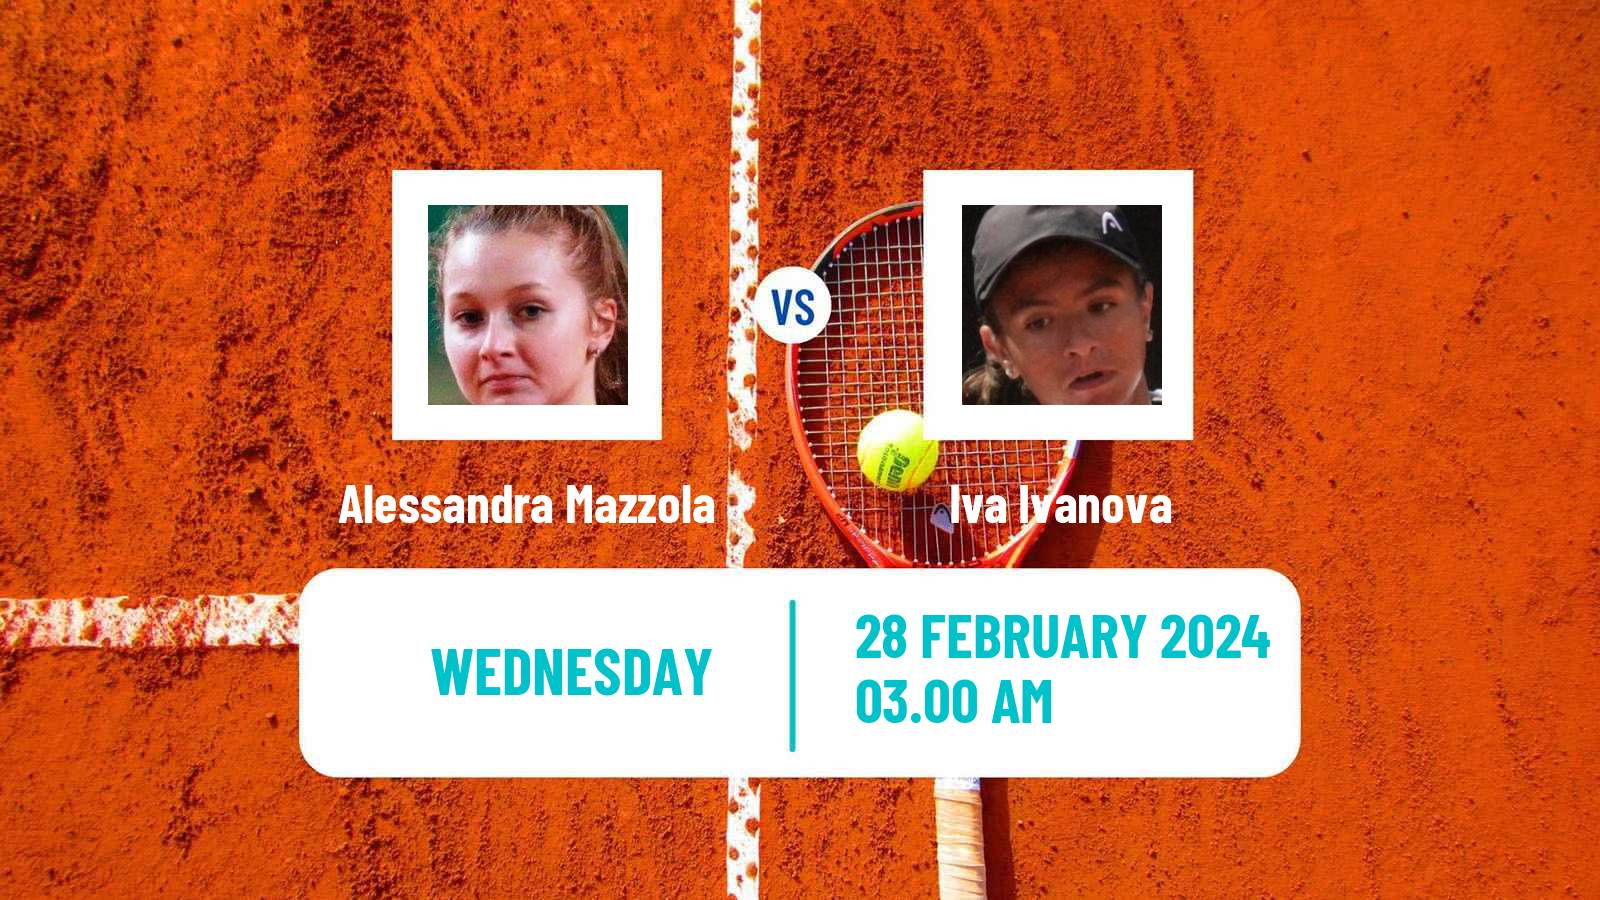 Tennis ITF W15 Antalya 3 Women Alessandra Mazzola - Iva Ivanova